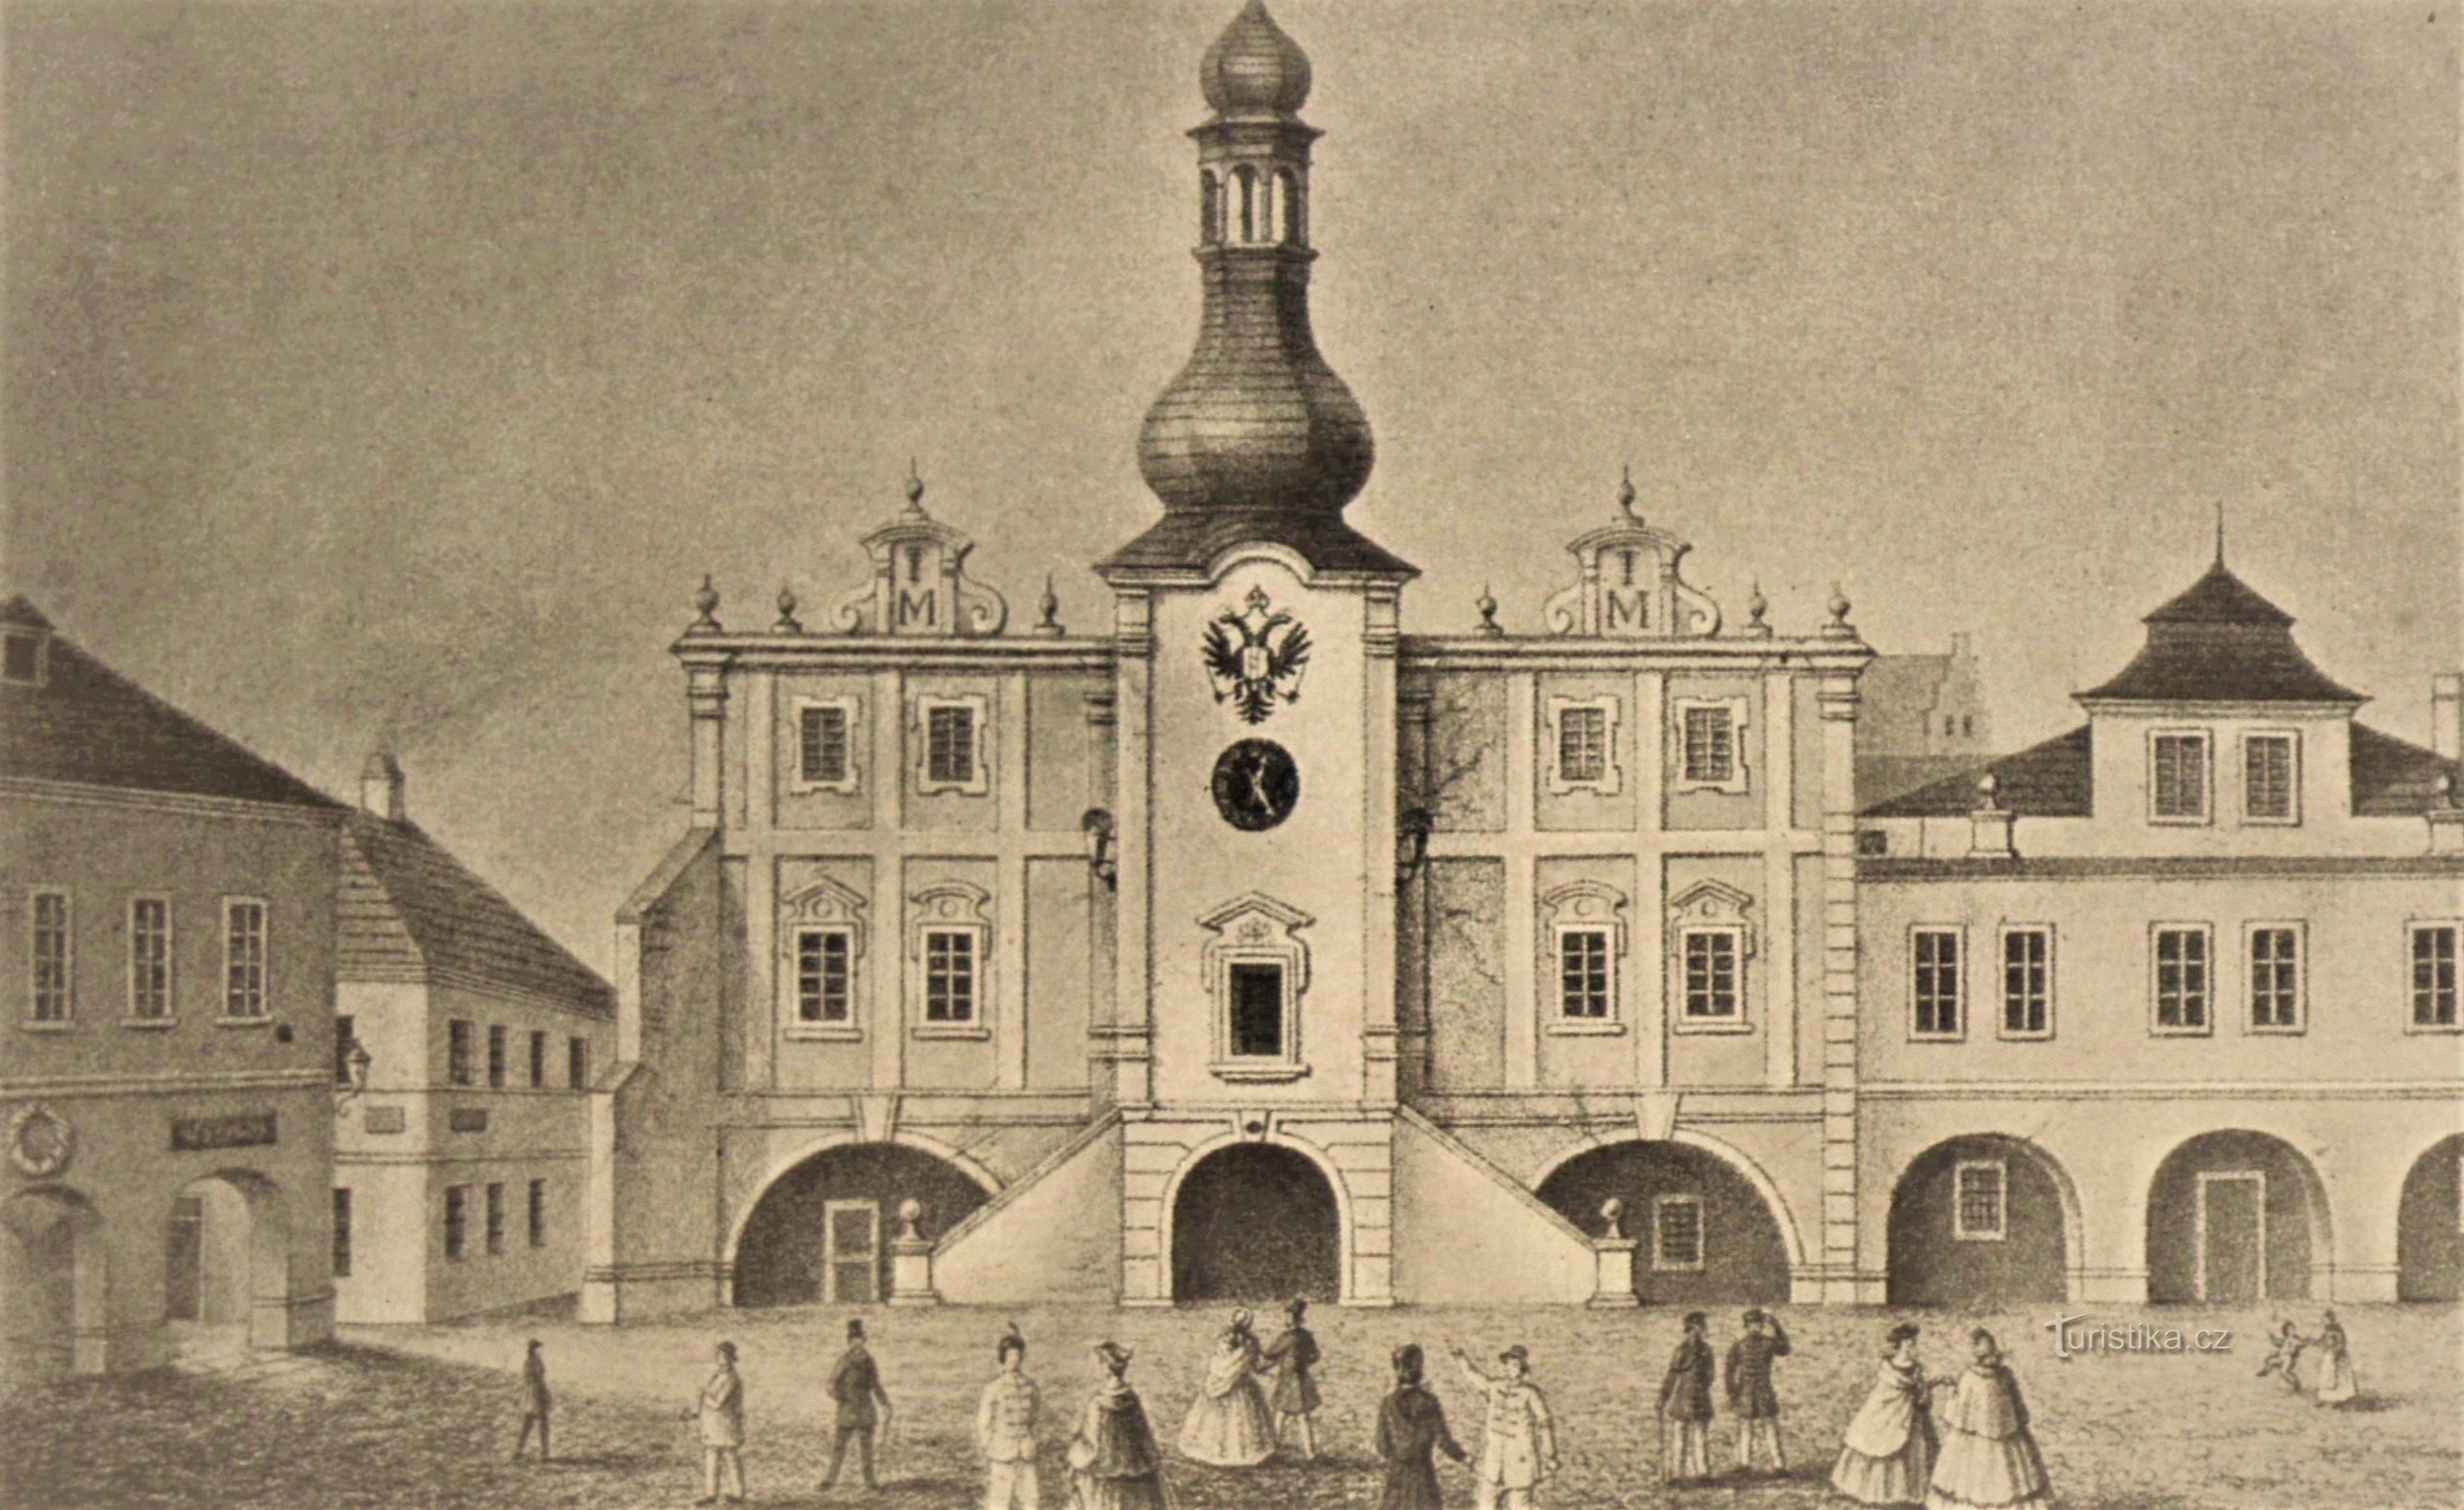 The original town hall in Nové Bydžov (before 1863)